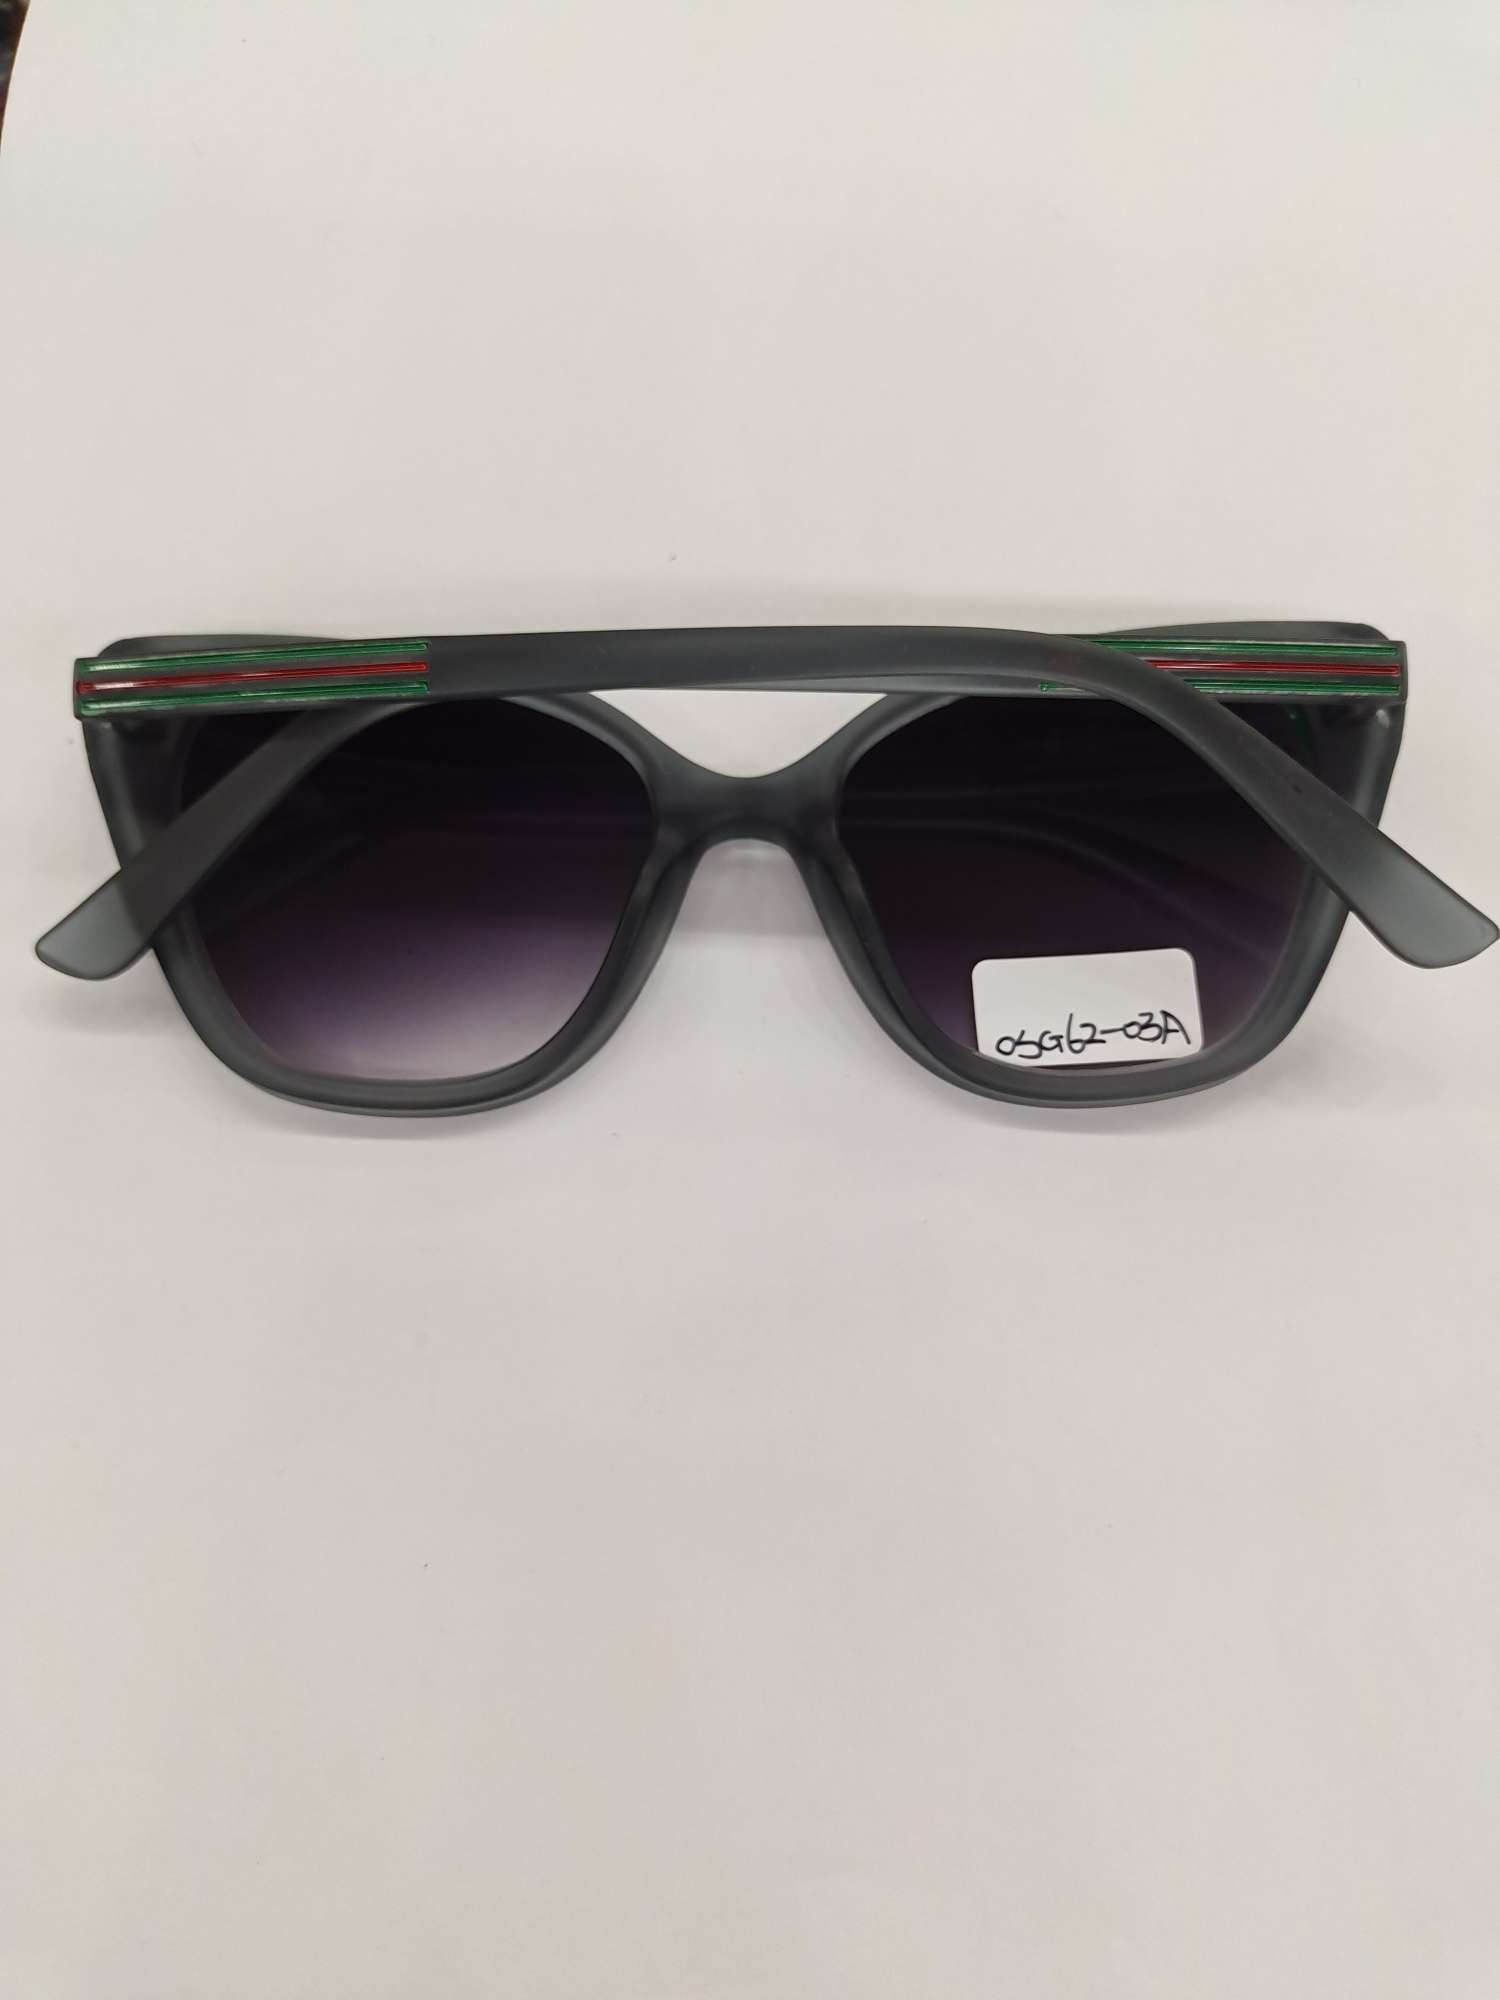 G62墨镜太阳镜男女可戴防紫外线保护眼睛时尚潮流产品图